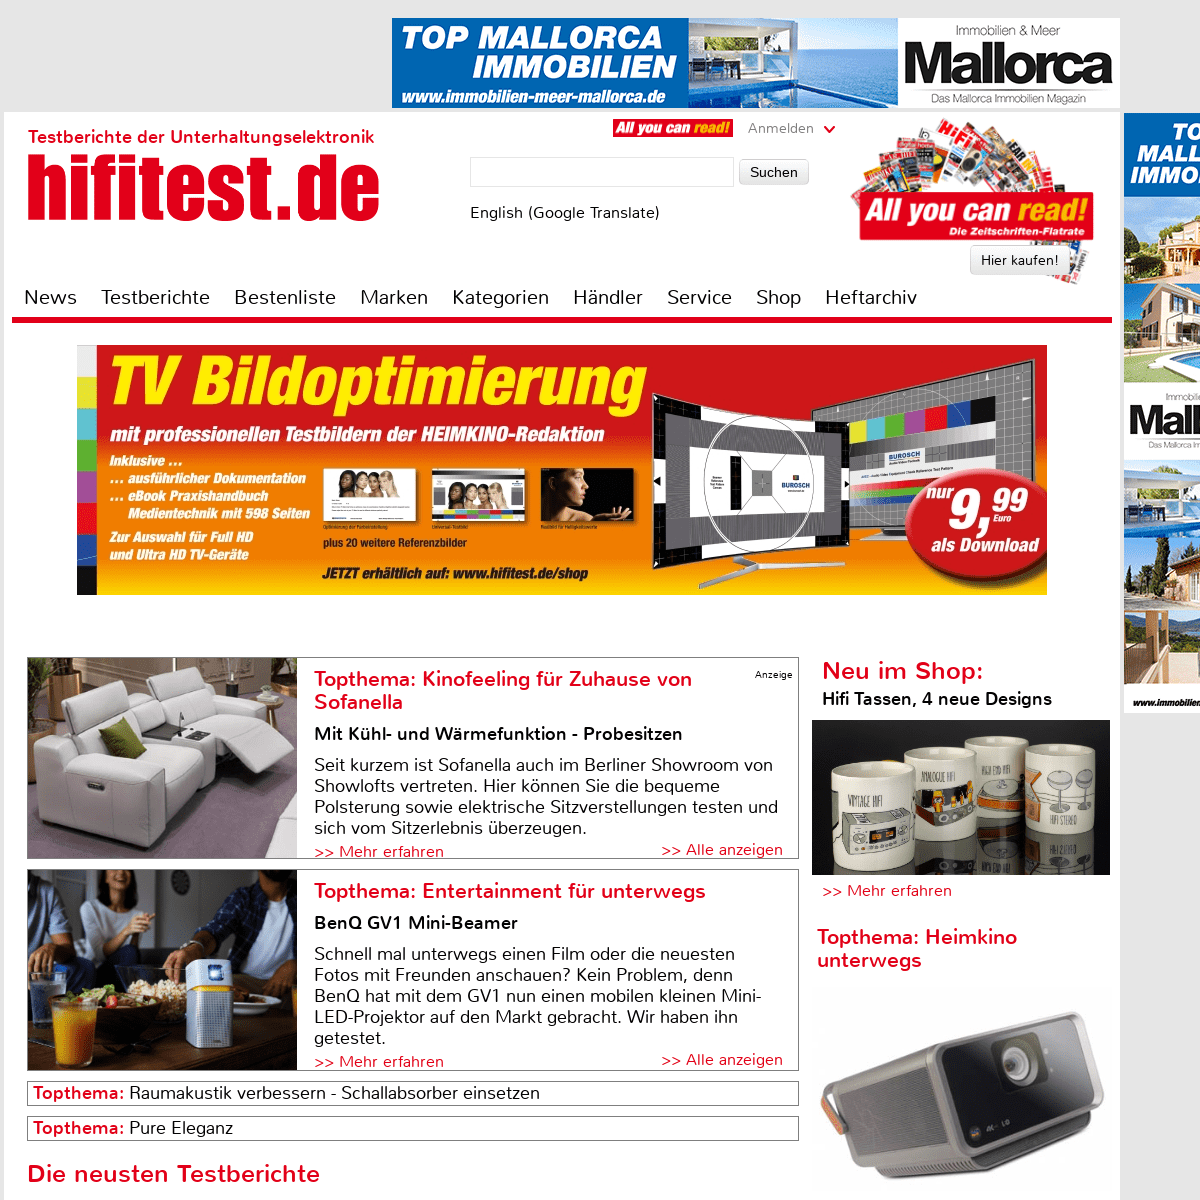 hifitest.de - Testberichte der Unterhaltungselektronik. Aktuelle Geräte im Test, Top-Kategorien, Topthema